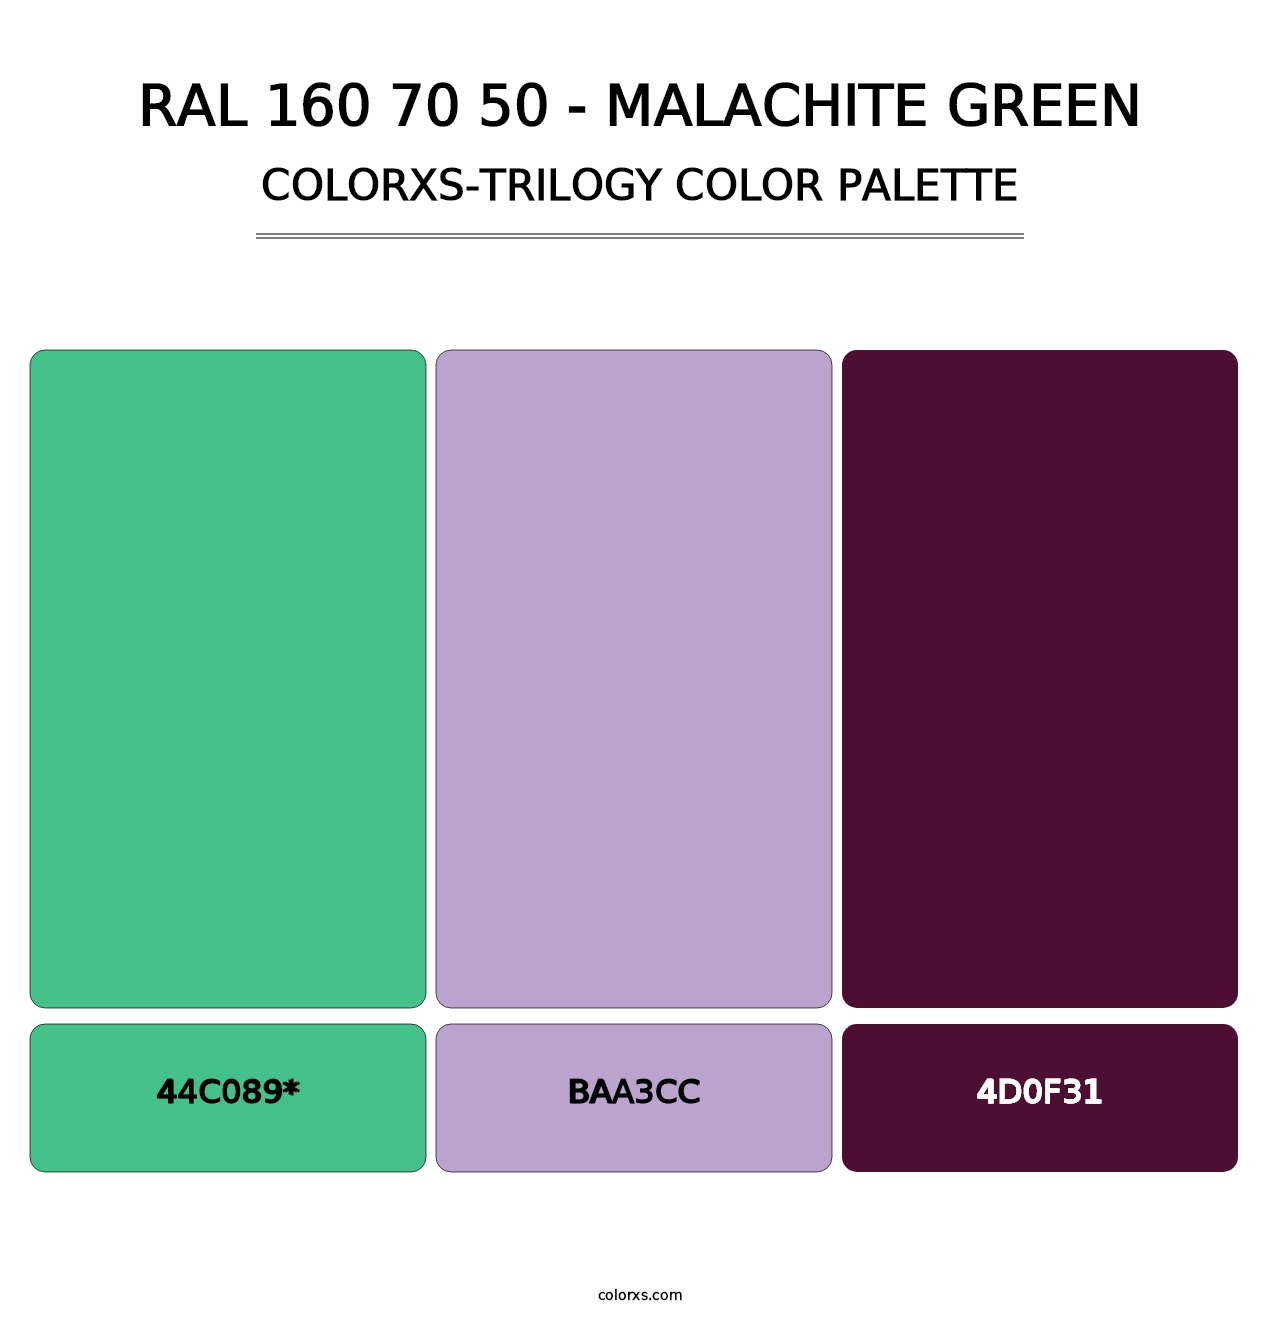 RAL 160 70 50 - Malachite Green - Colorxs Trilogy Palette